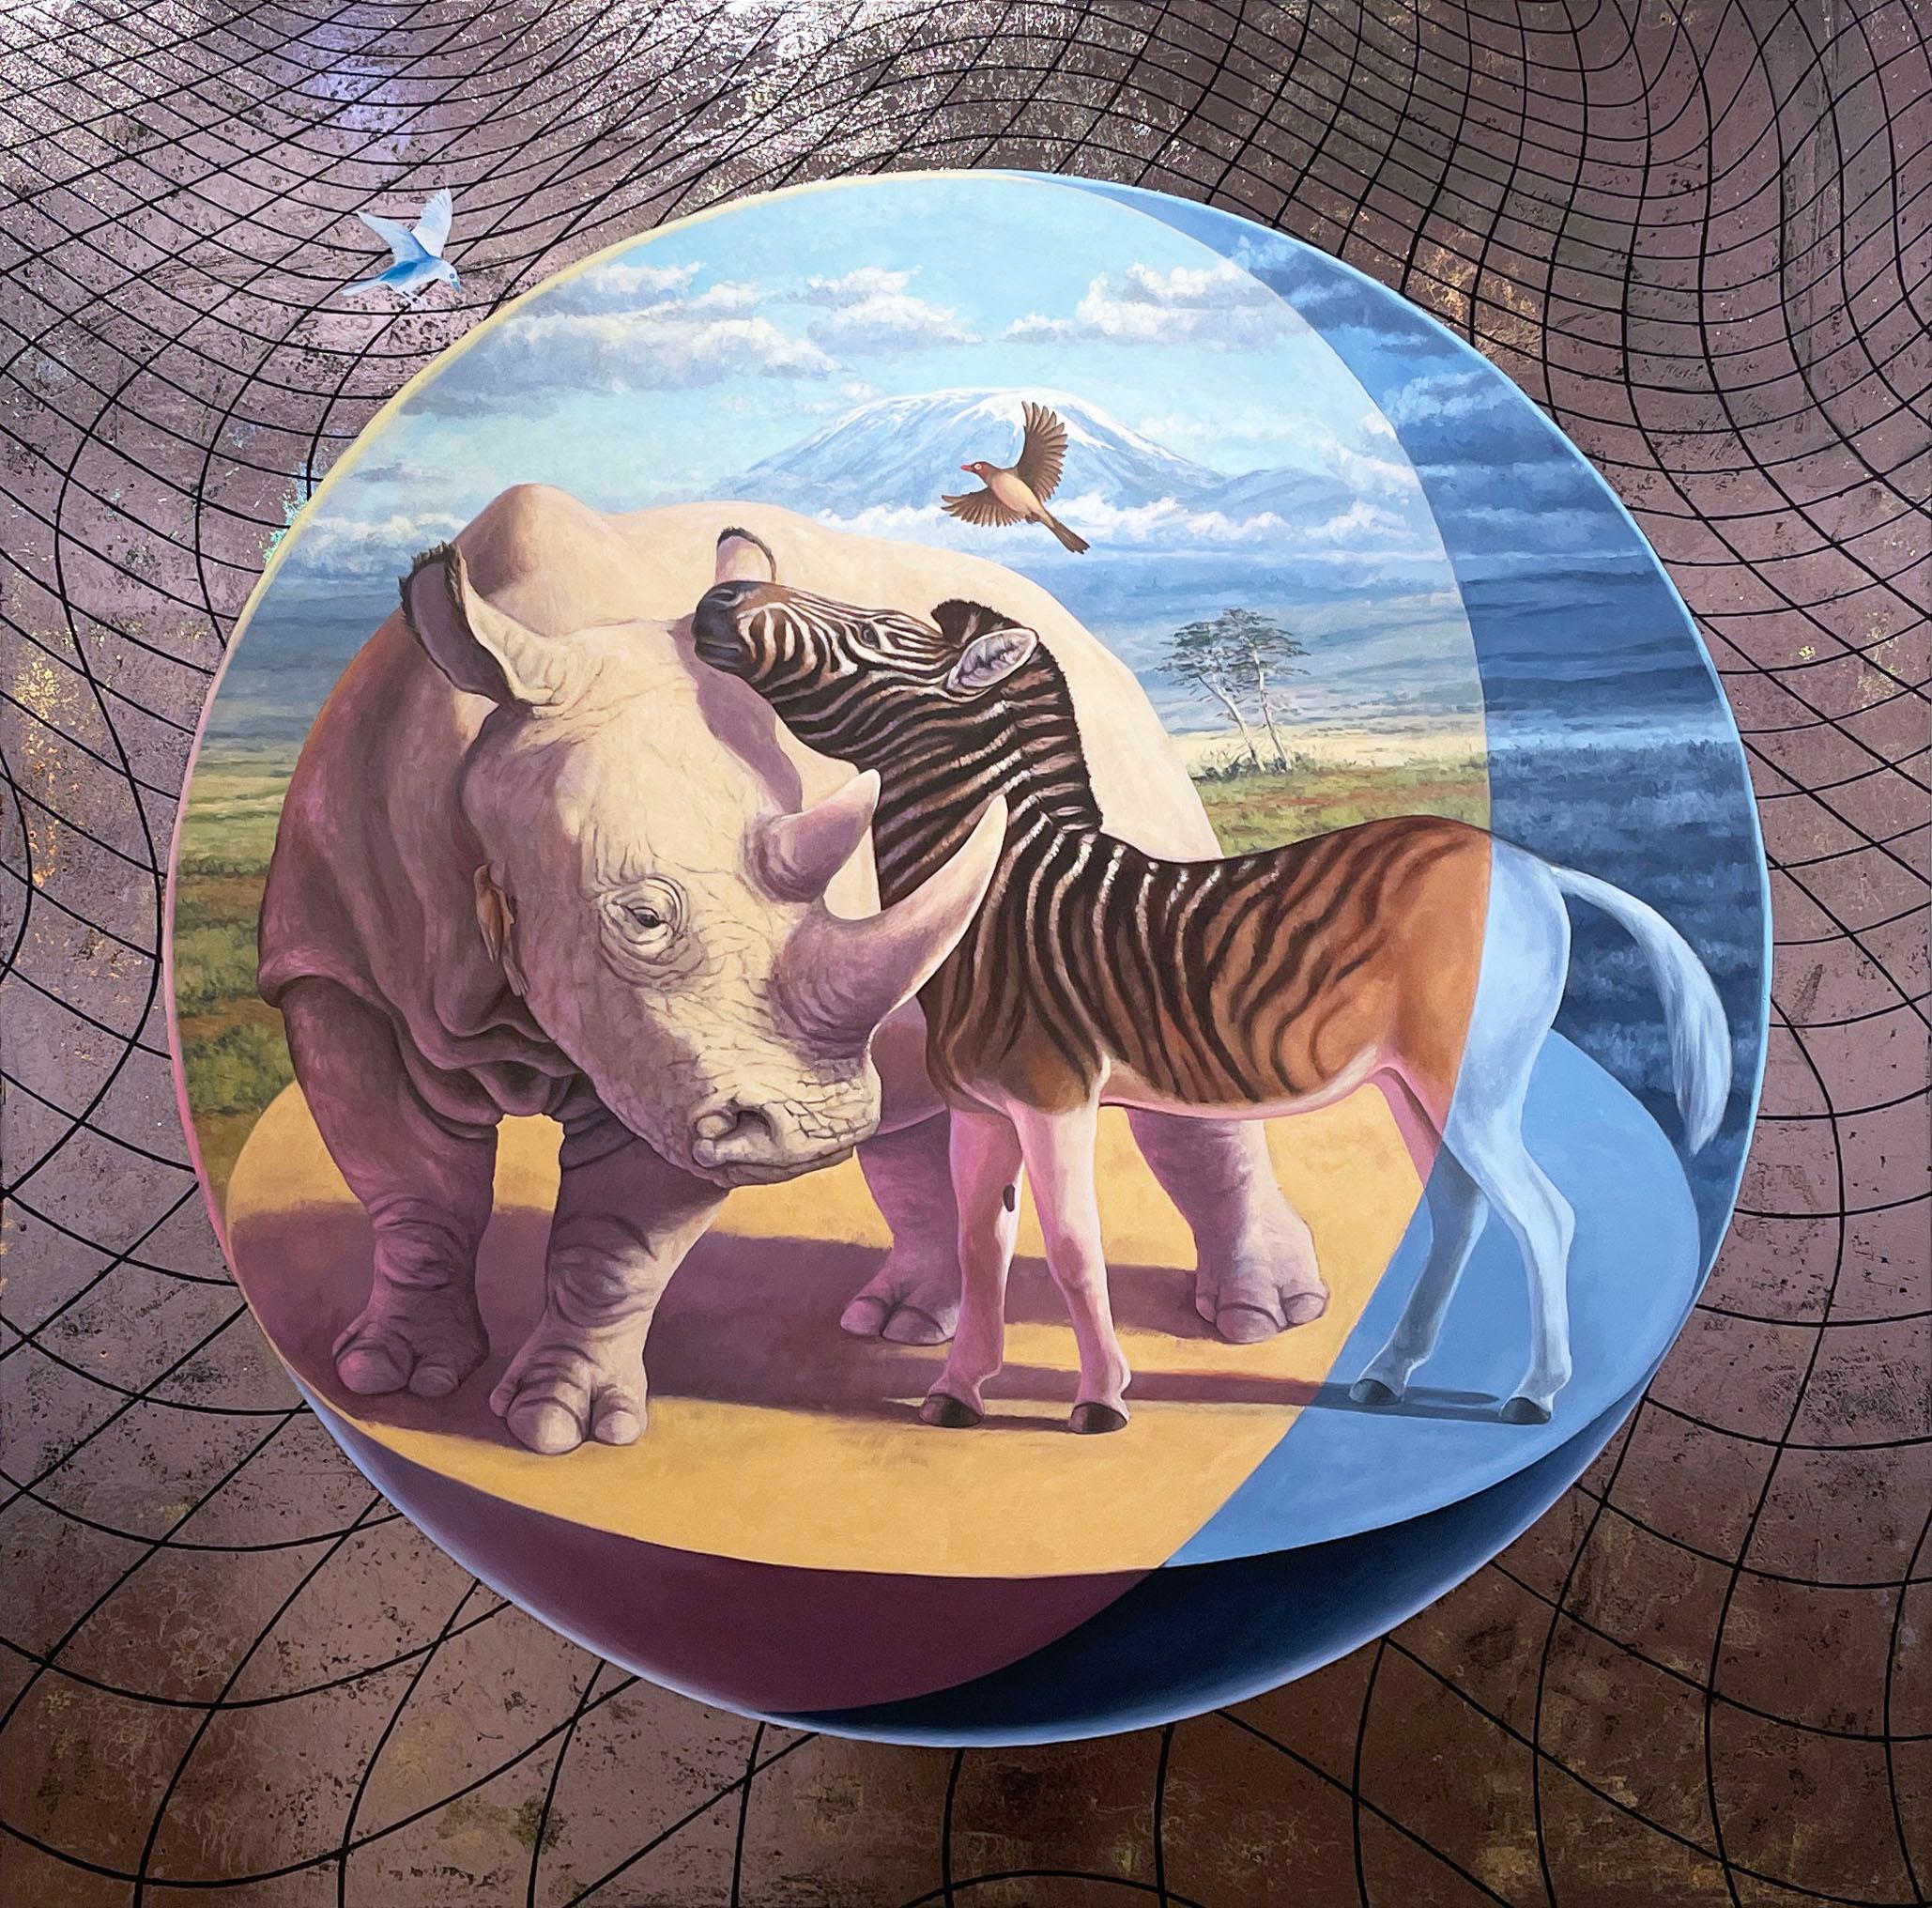 Quagga's Secret (2019) oil on panel, nature, wildlife landscape, Africa, rhino